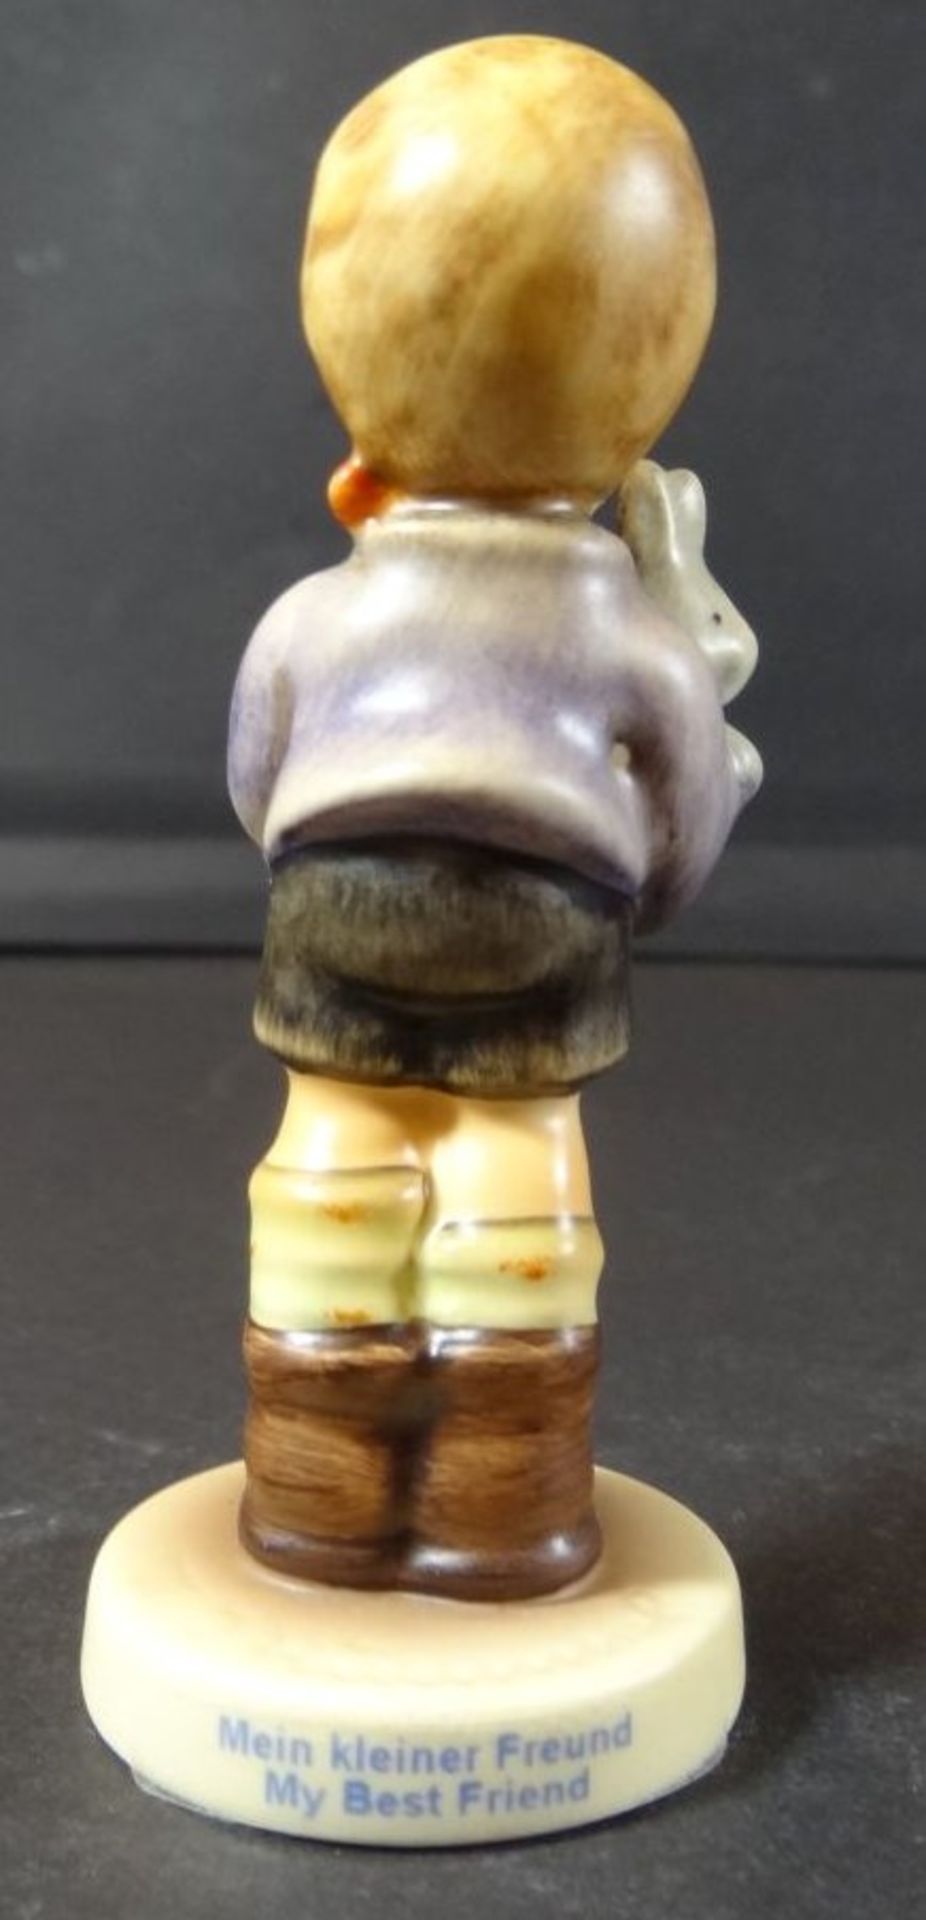 Hummel Figur "Mein kleiner Freund", H-9 cm - Bild 4 aus 6